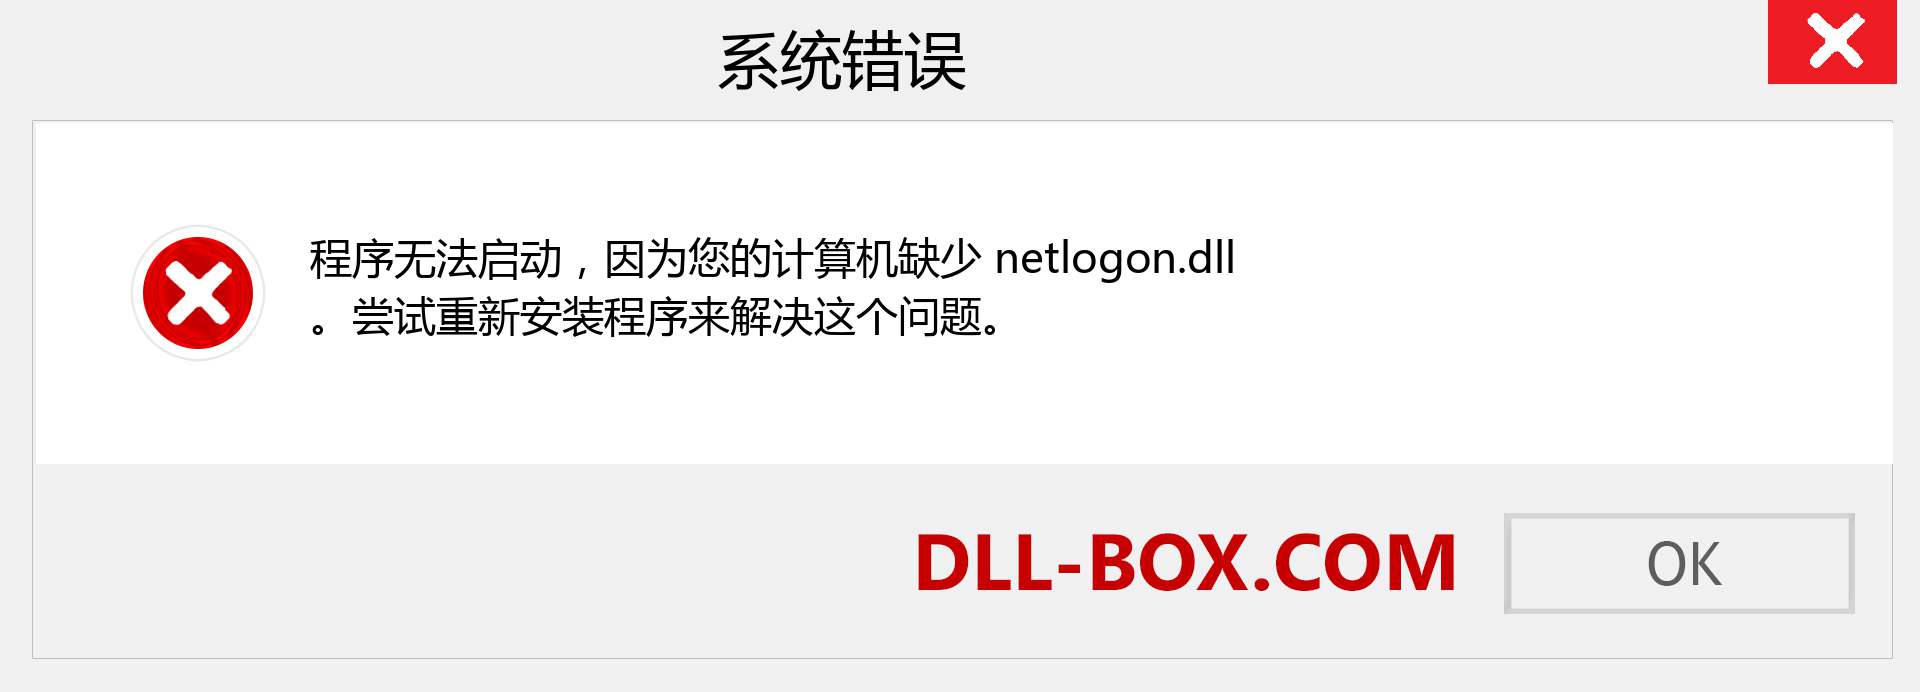 netlogon.dll 文件丢失？。 适用于 Windows 7、8、10 的下载 - 修复 Windows、照片、图像上的 netlogon dll 丢失错误